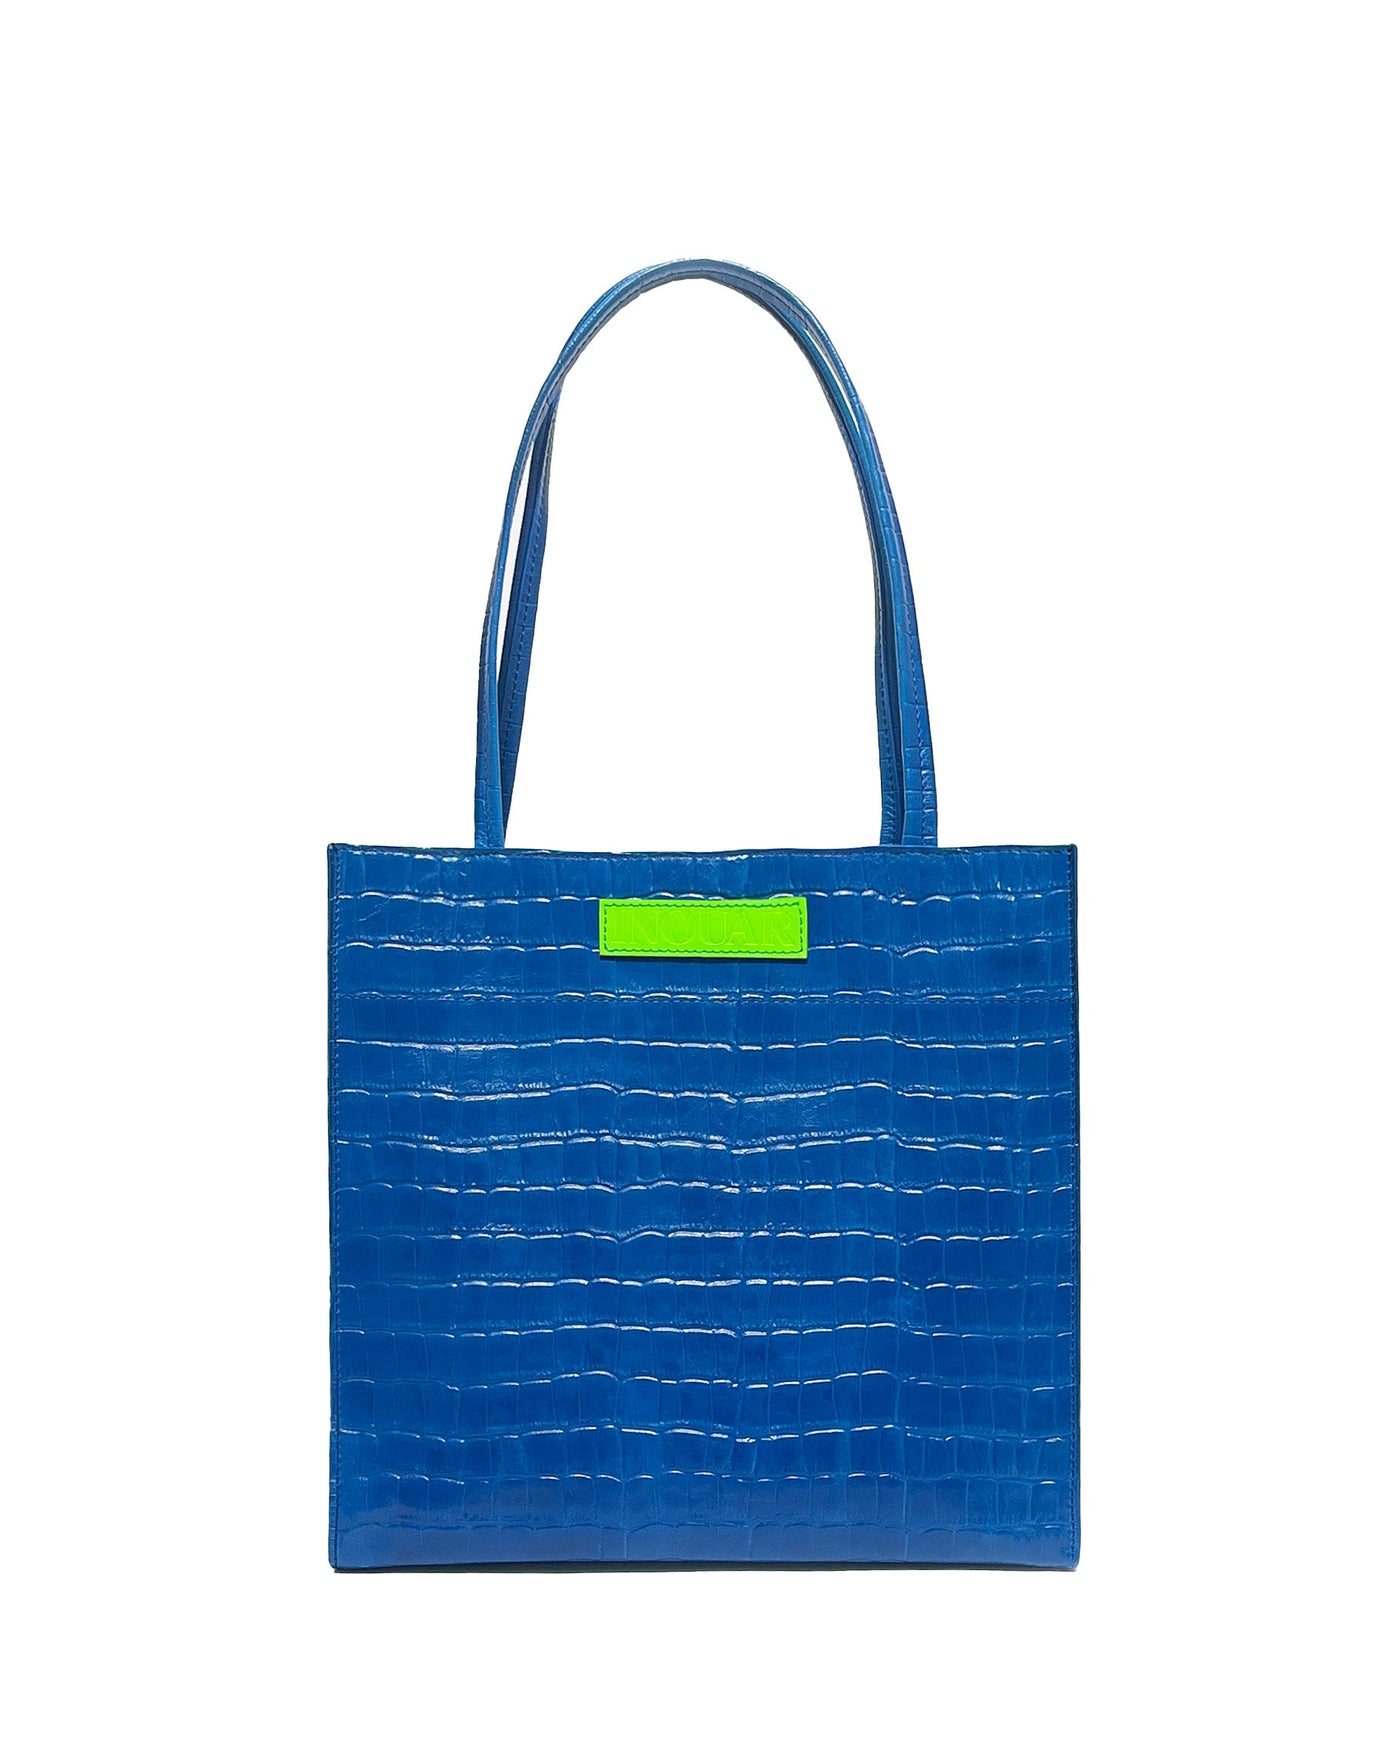 Toni Medium Blue Tote Bag